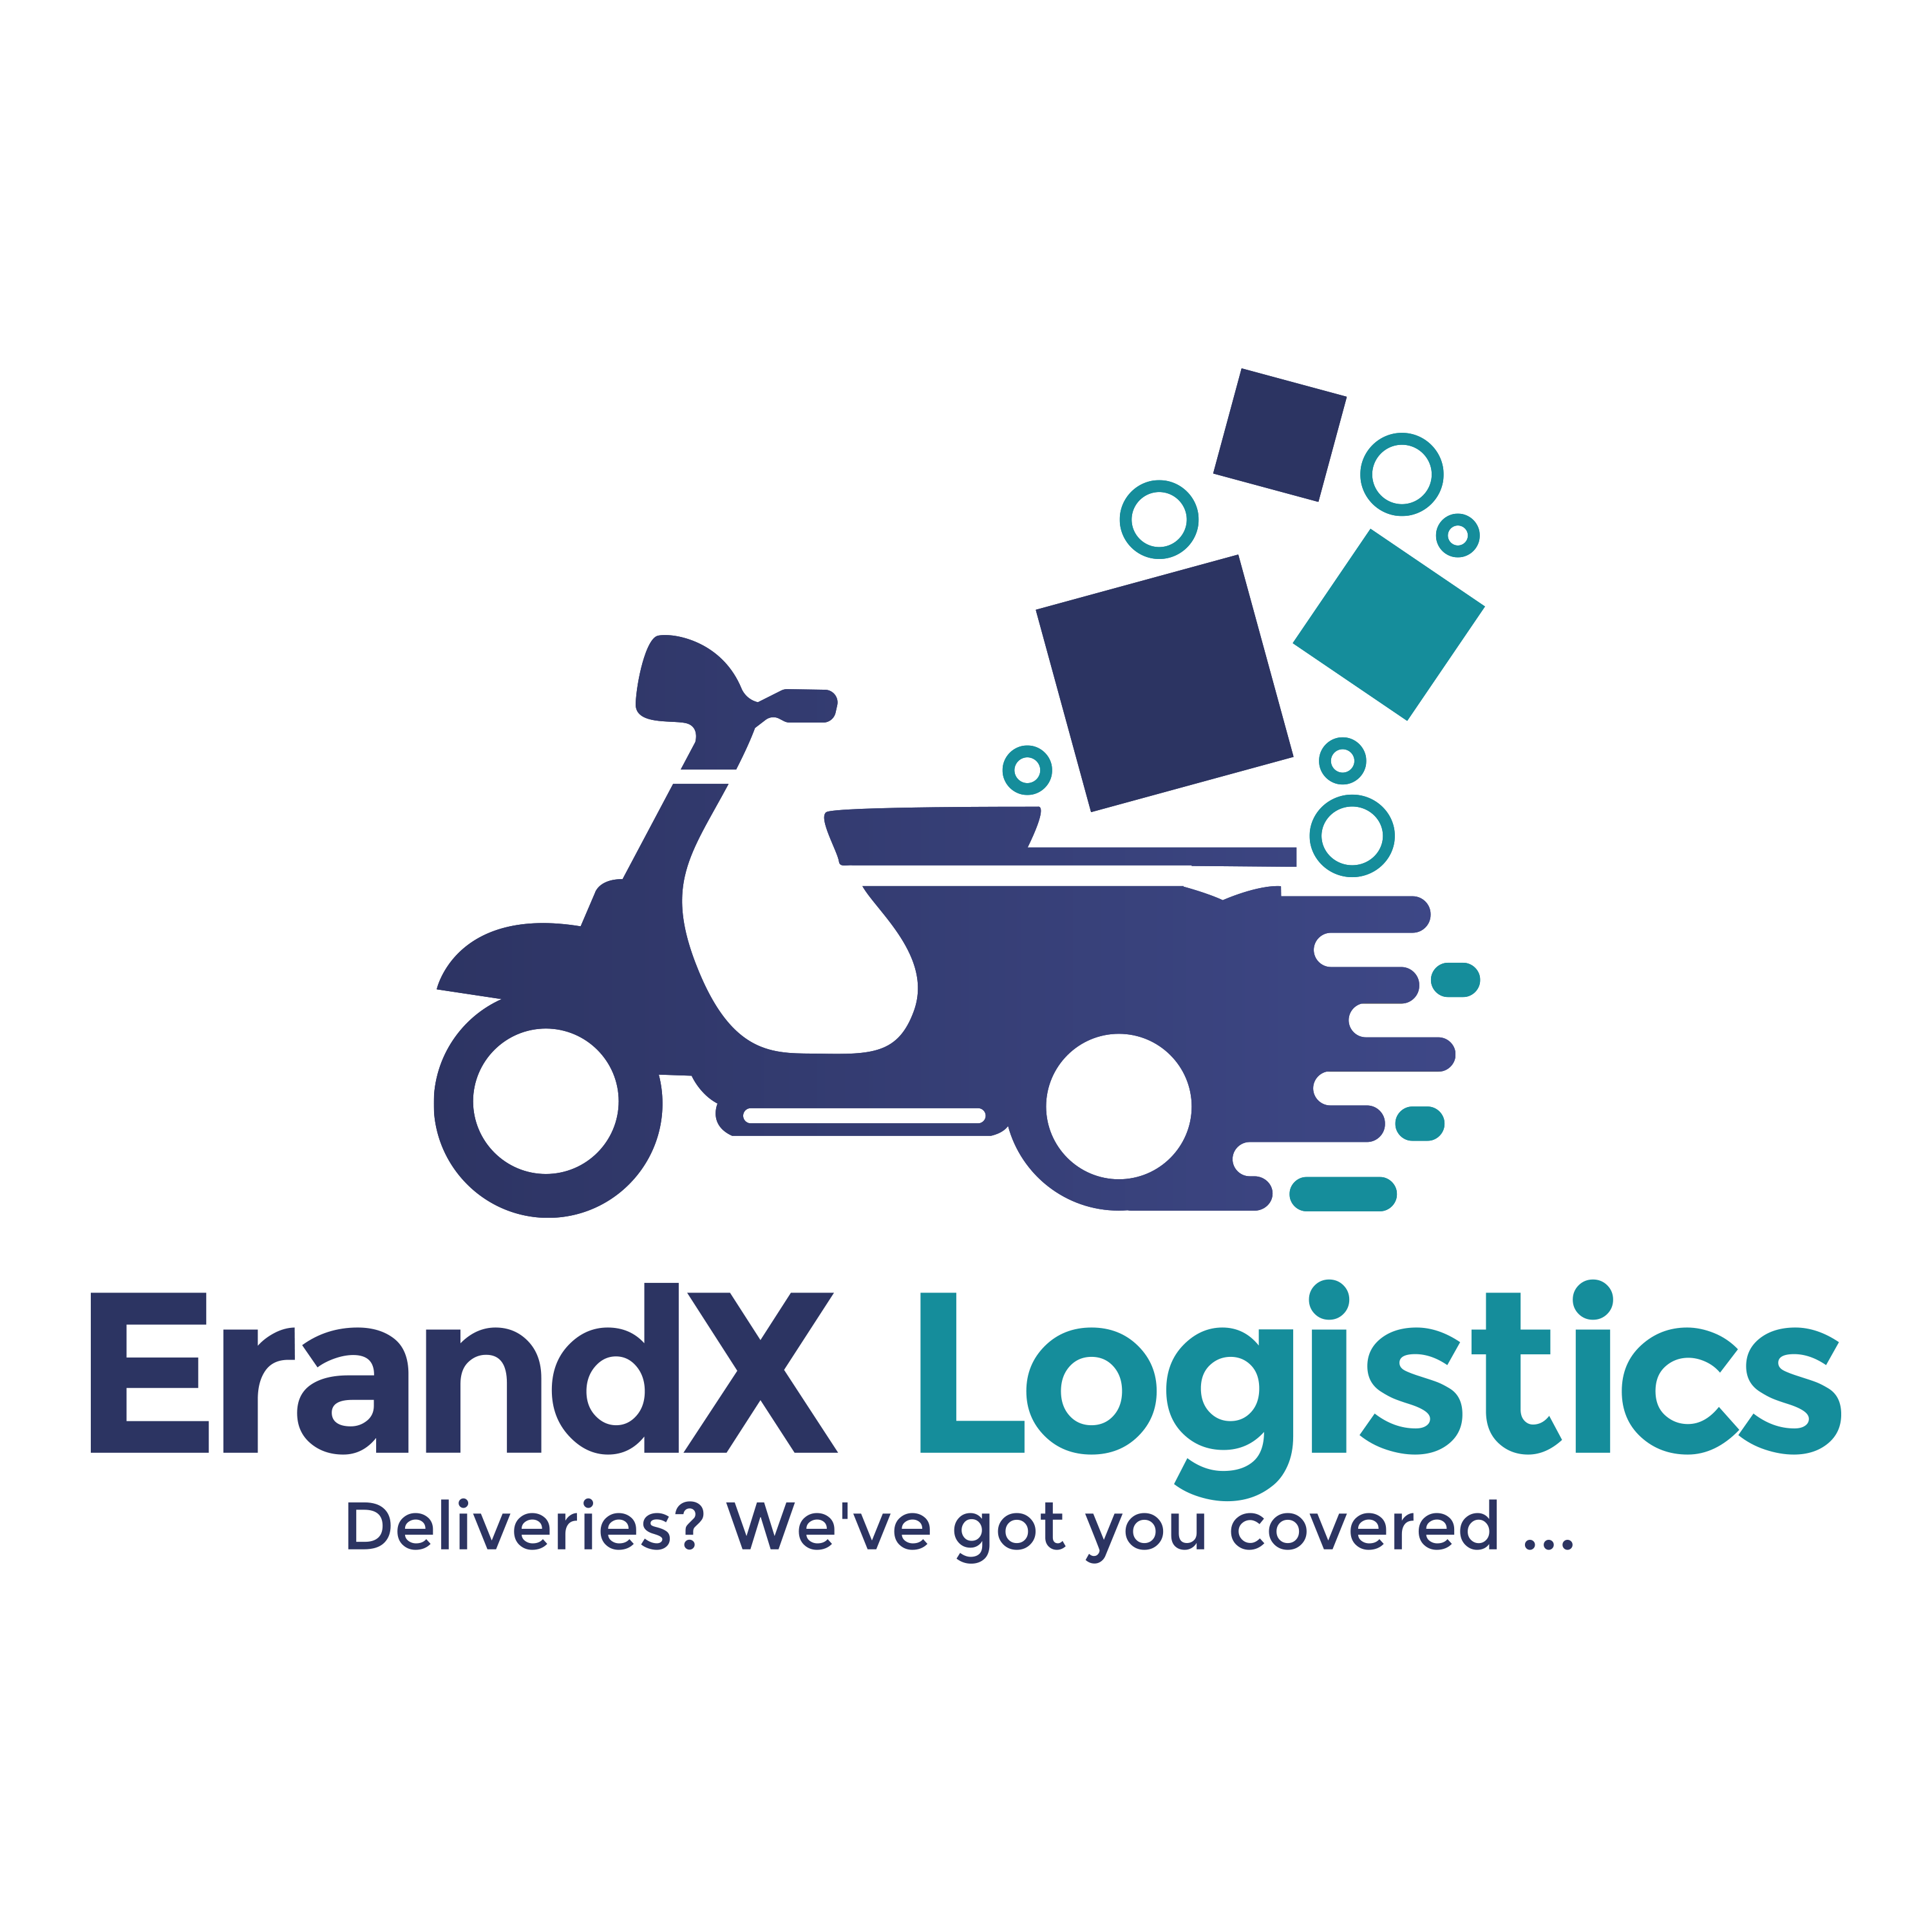 ErandX Logistics